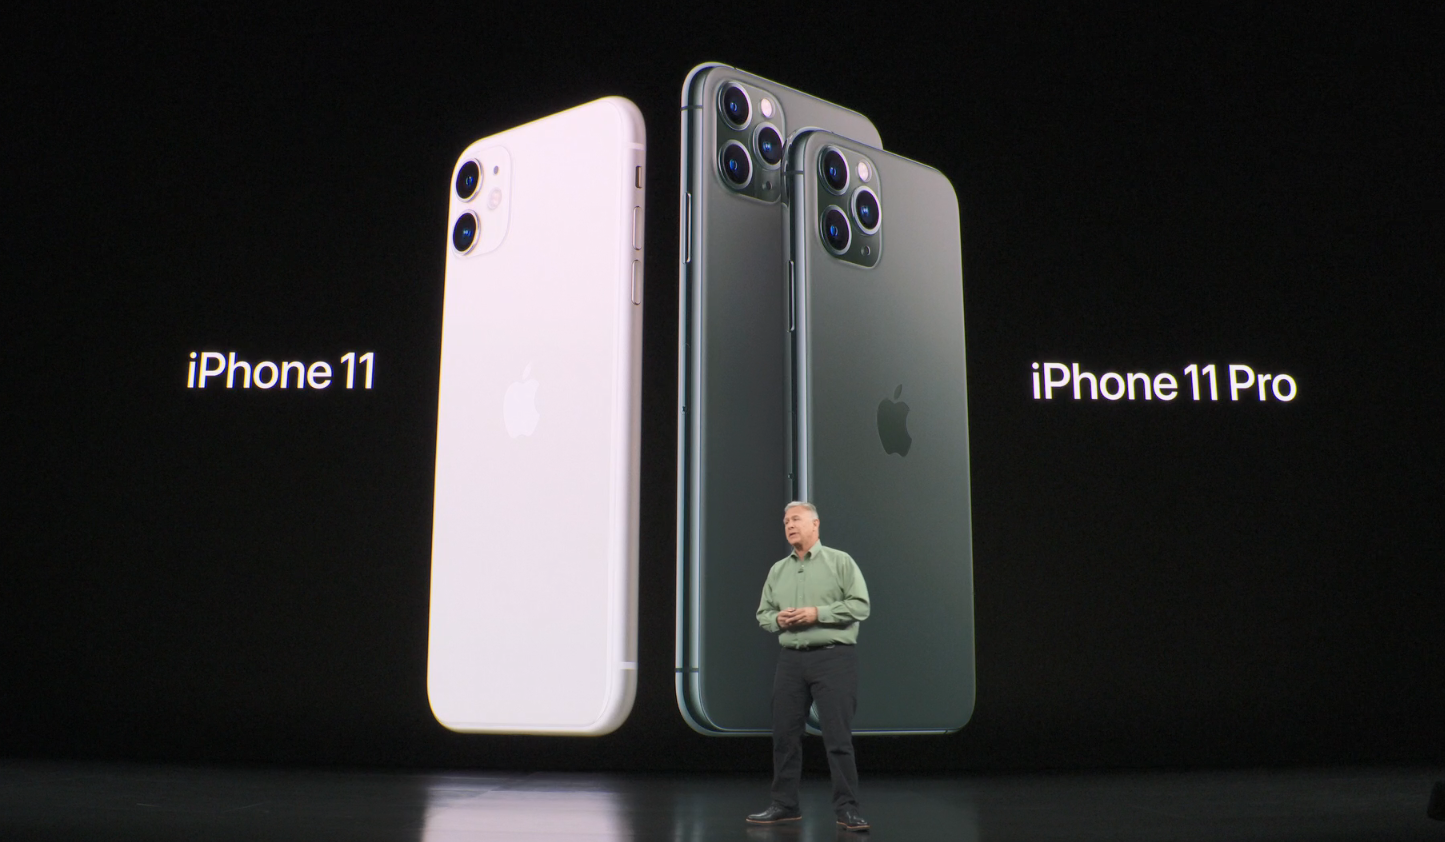  AppleiPhone 11 diluncurkan Selasa